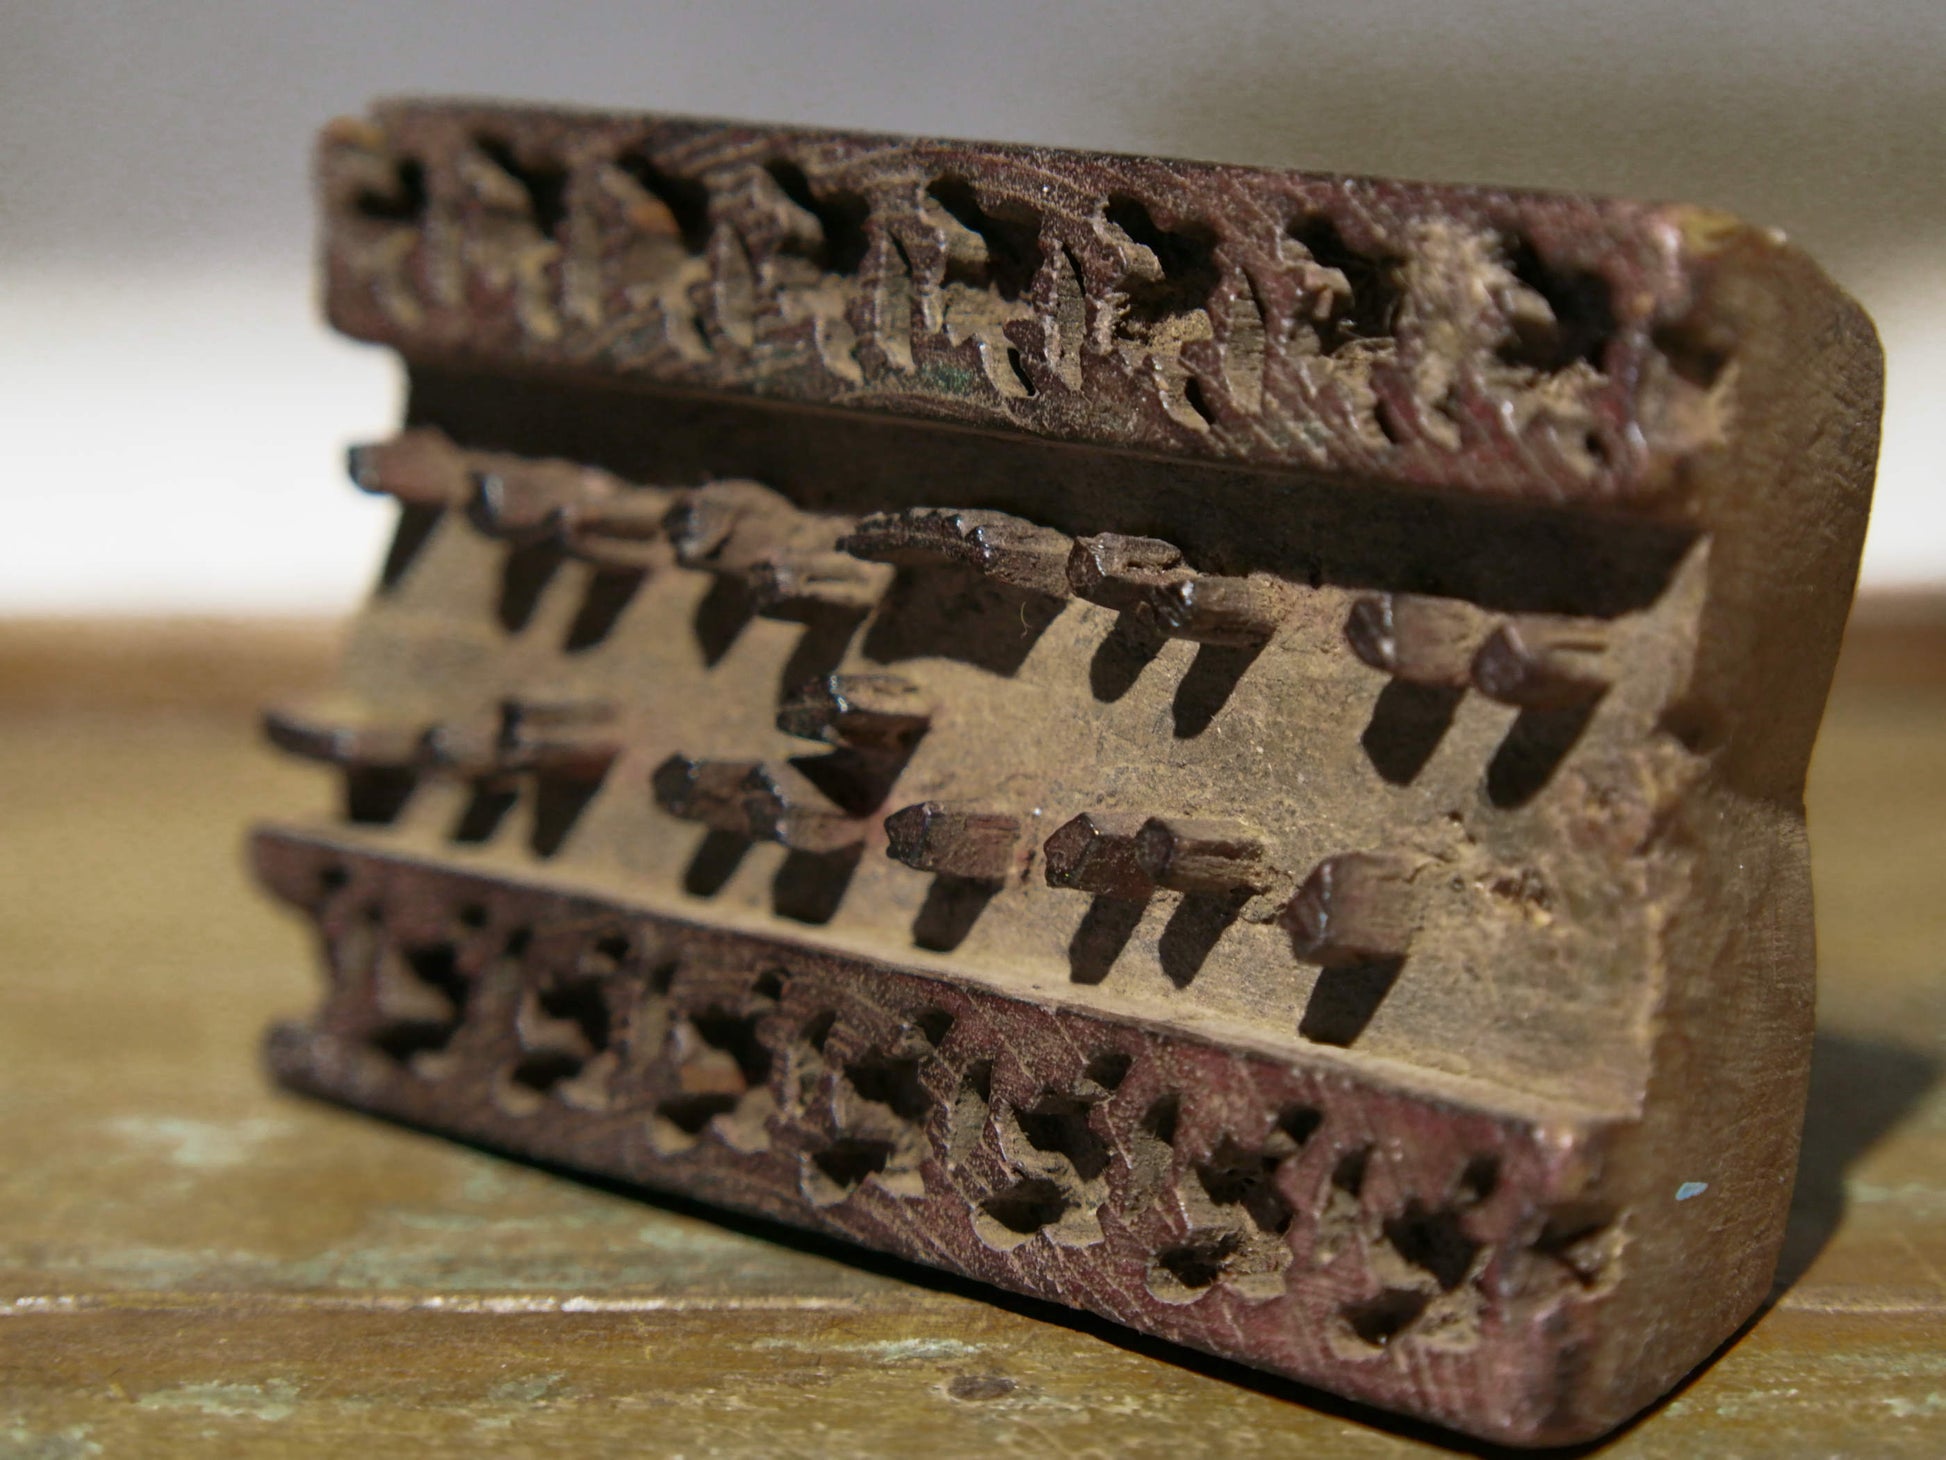 Vecchio timbro artigianale in legno per tessuti usato in India per la tradizionale lavorazione print block. Ricavato da un unico pezzo di legno intagliato. Si può usare sia da appoggio che da appendere, dietro vi è applicato un gancio.  Dimensioni 13x8xprof.4cm. 